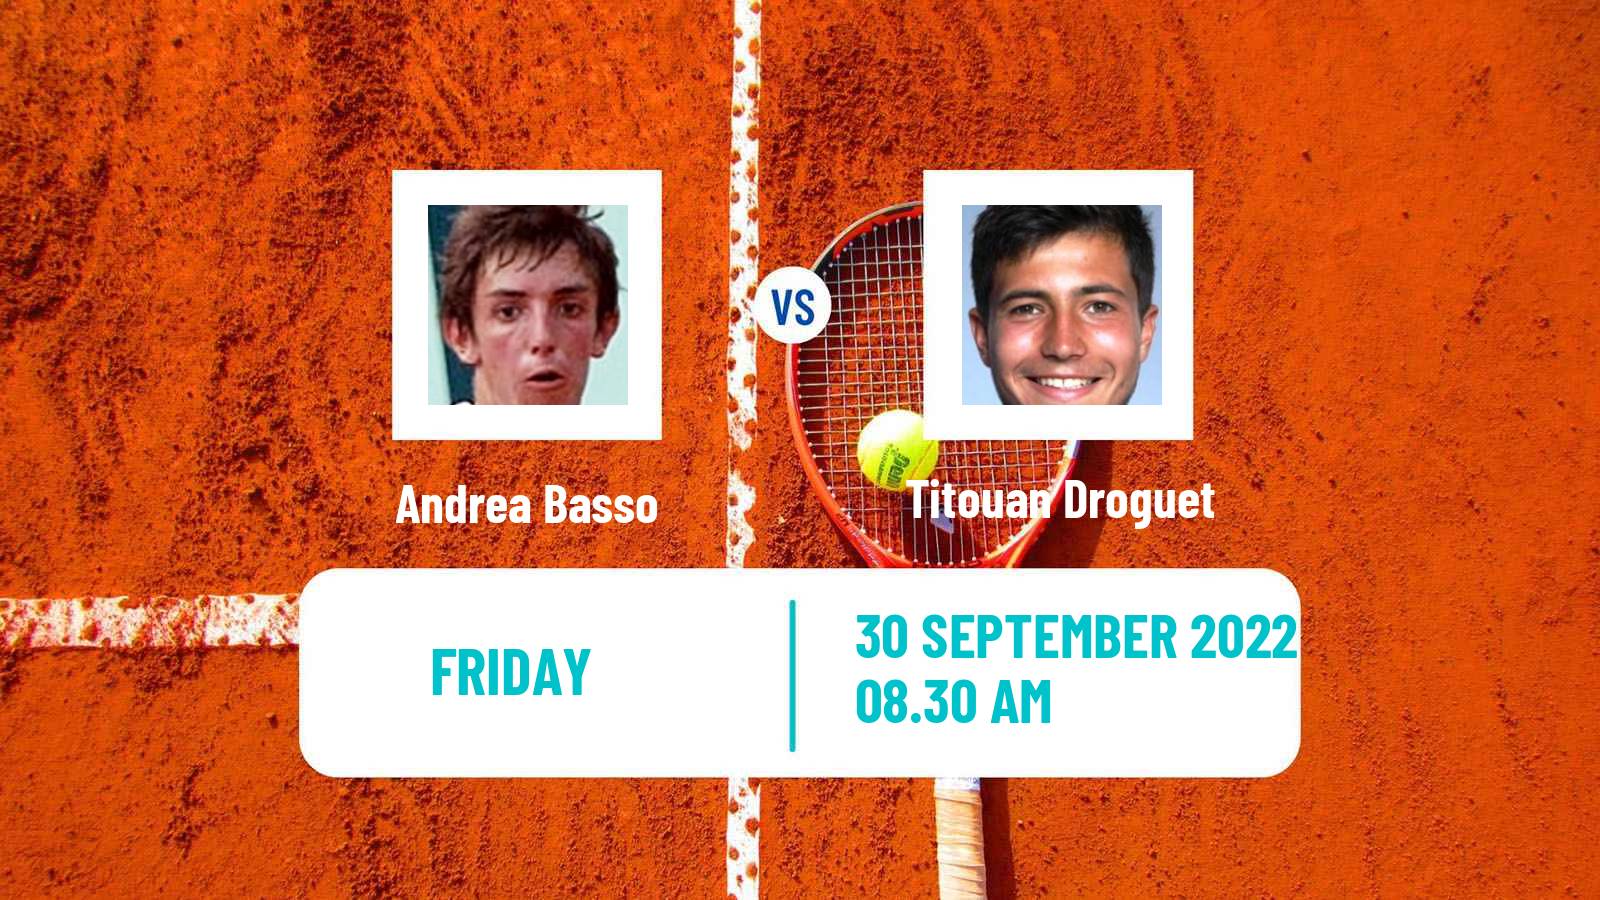 Tennis ITF Tournaments Andrea Basso - Titouan Droguet